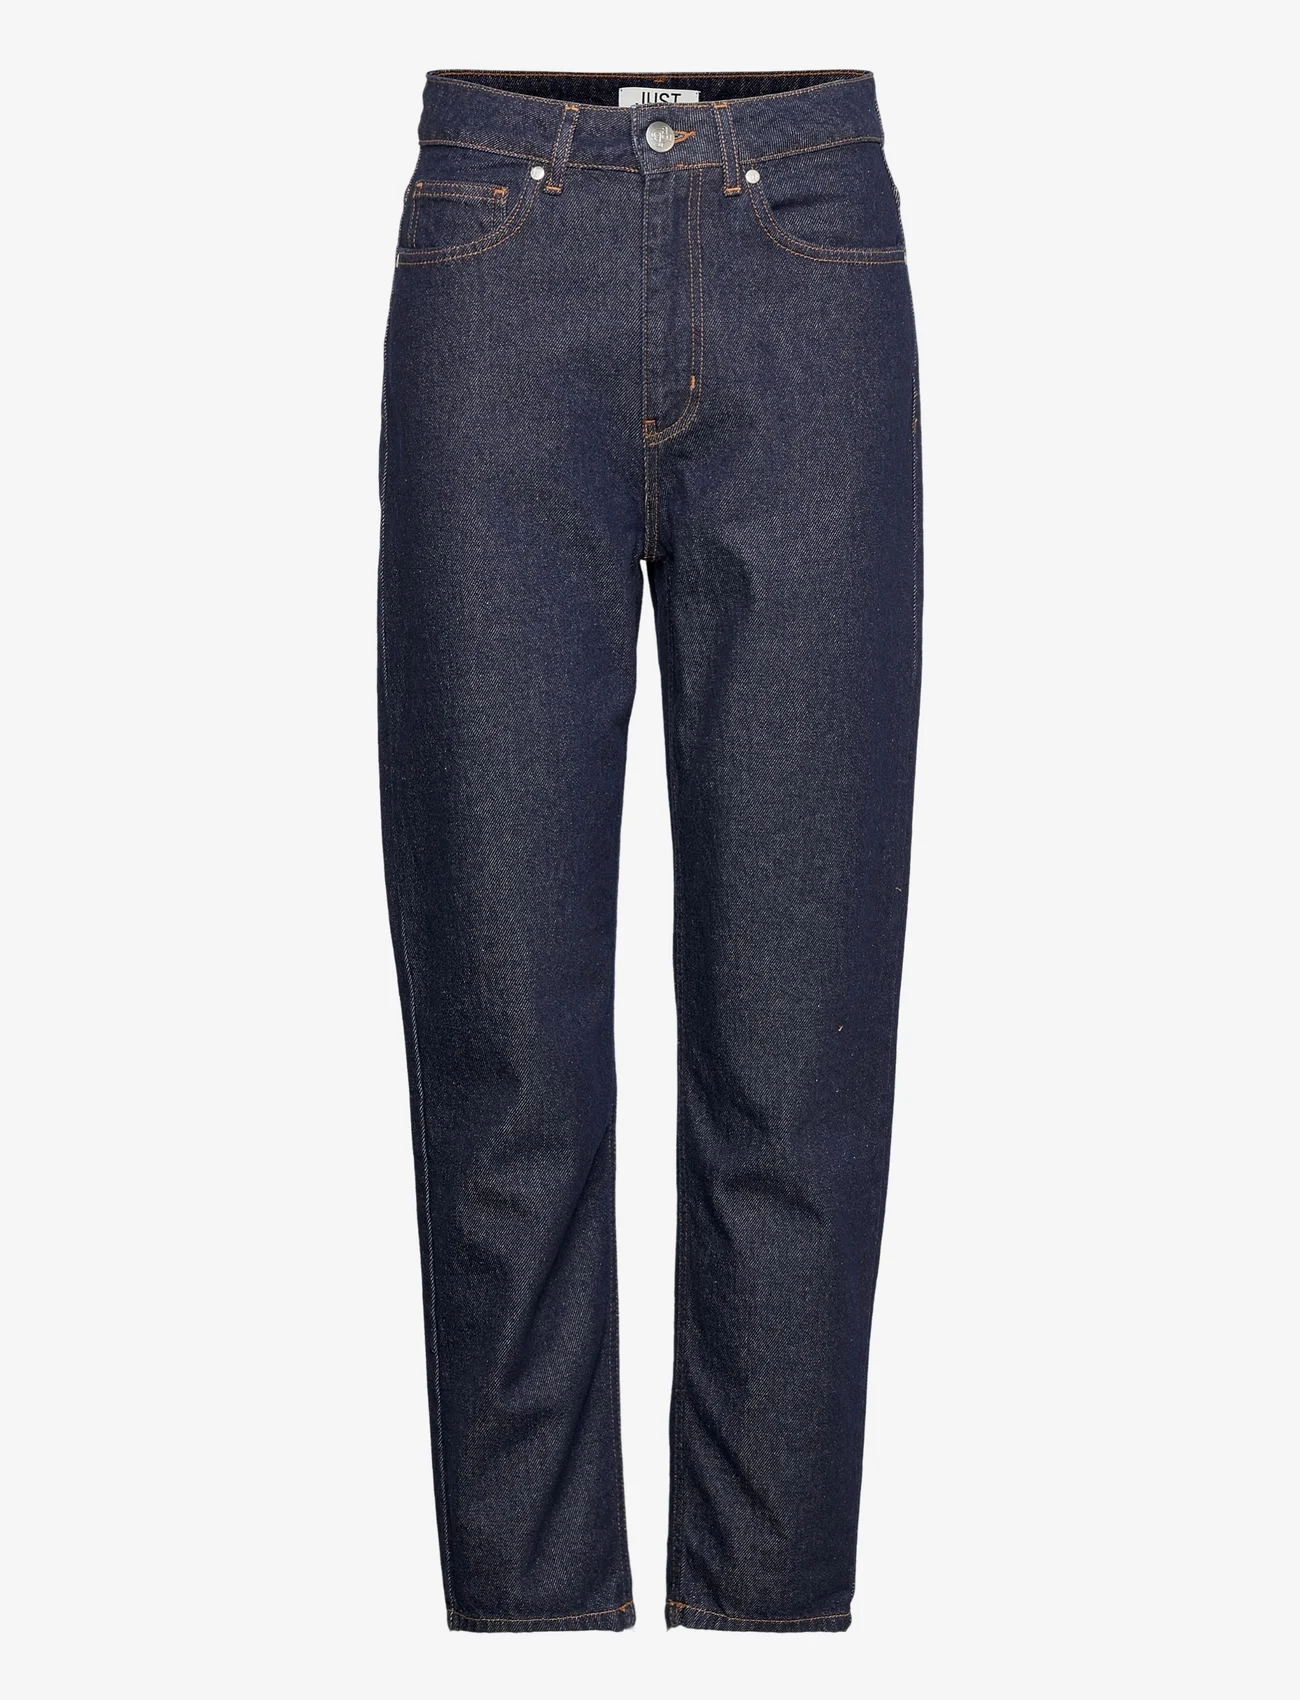 Just Female - Stormy jeans 0103 - tiesaus kirpimo džinsai - blue rinse - 0